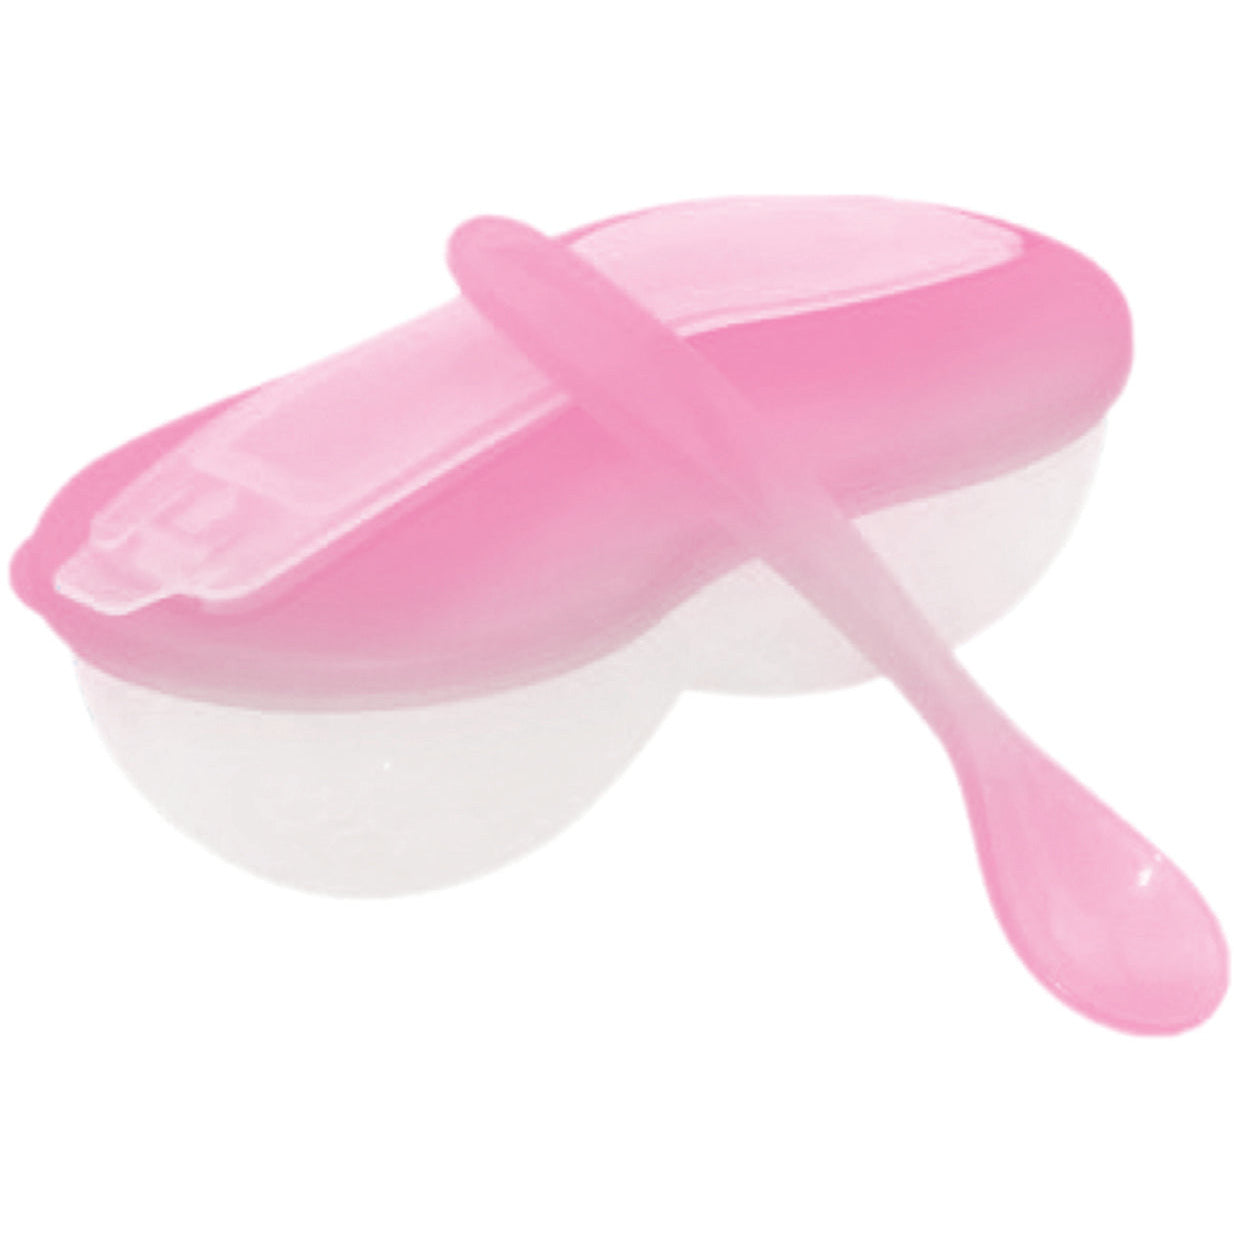 OPTIMAL Grinding Feeding Bowl Tip Spoon - Blue , Pink